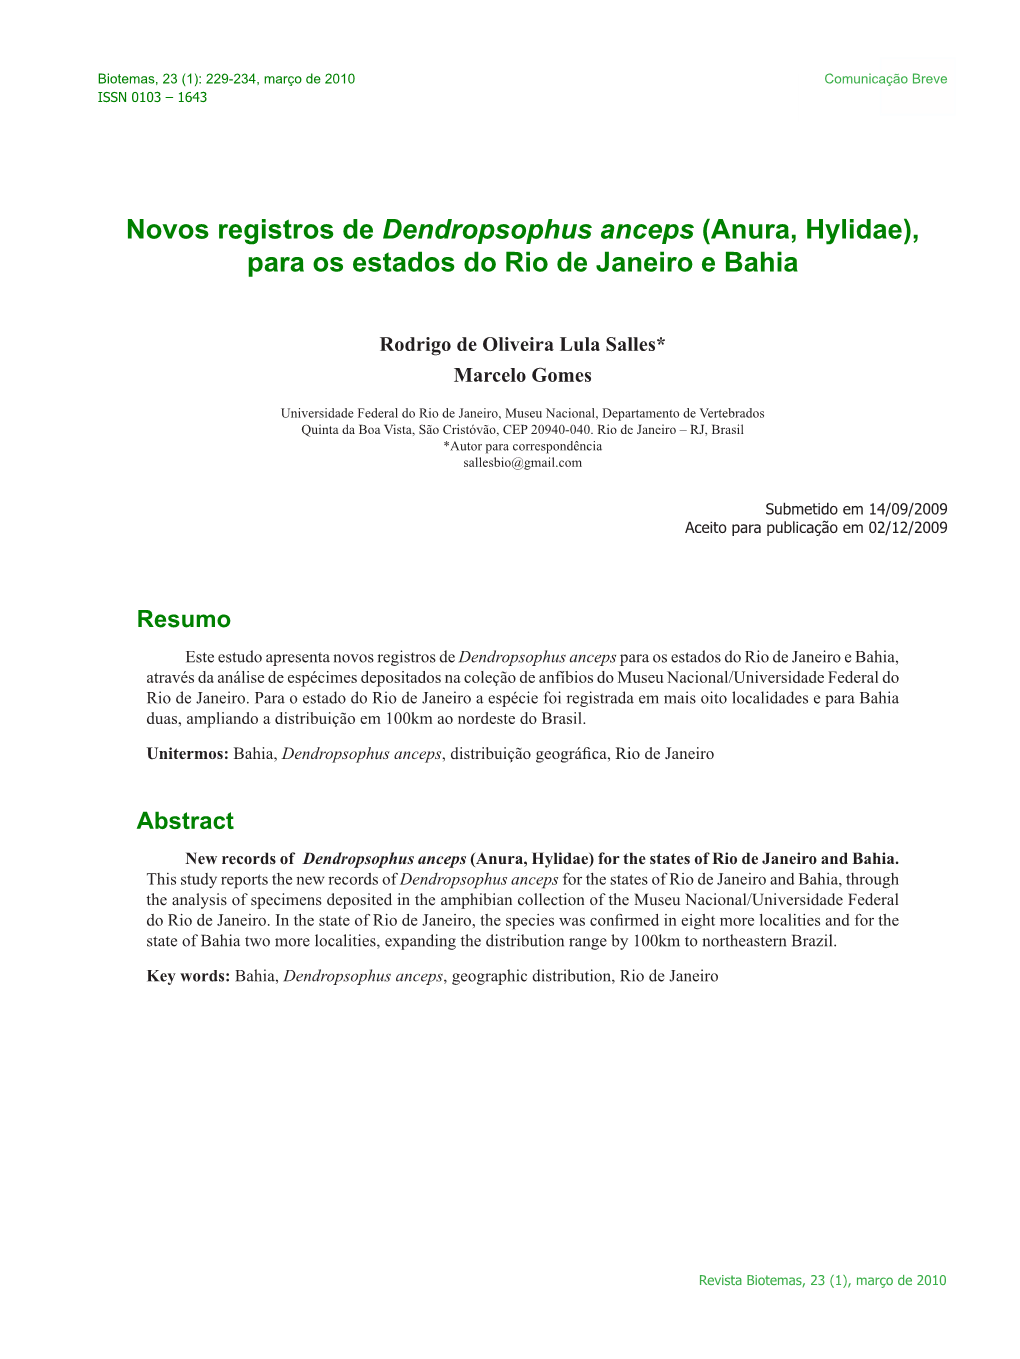 Novos Registros De Dendropsophus Anceps (Anura, Hylidae), Para Os Estados Do Rio De Janeiro E Bahia